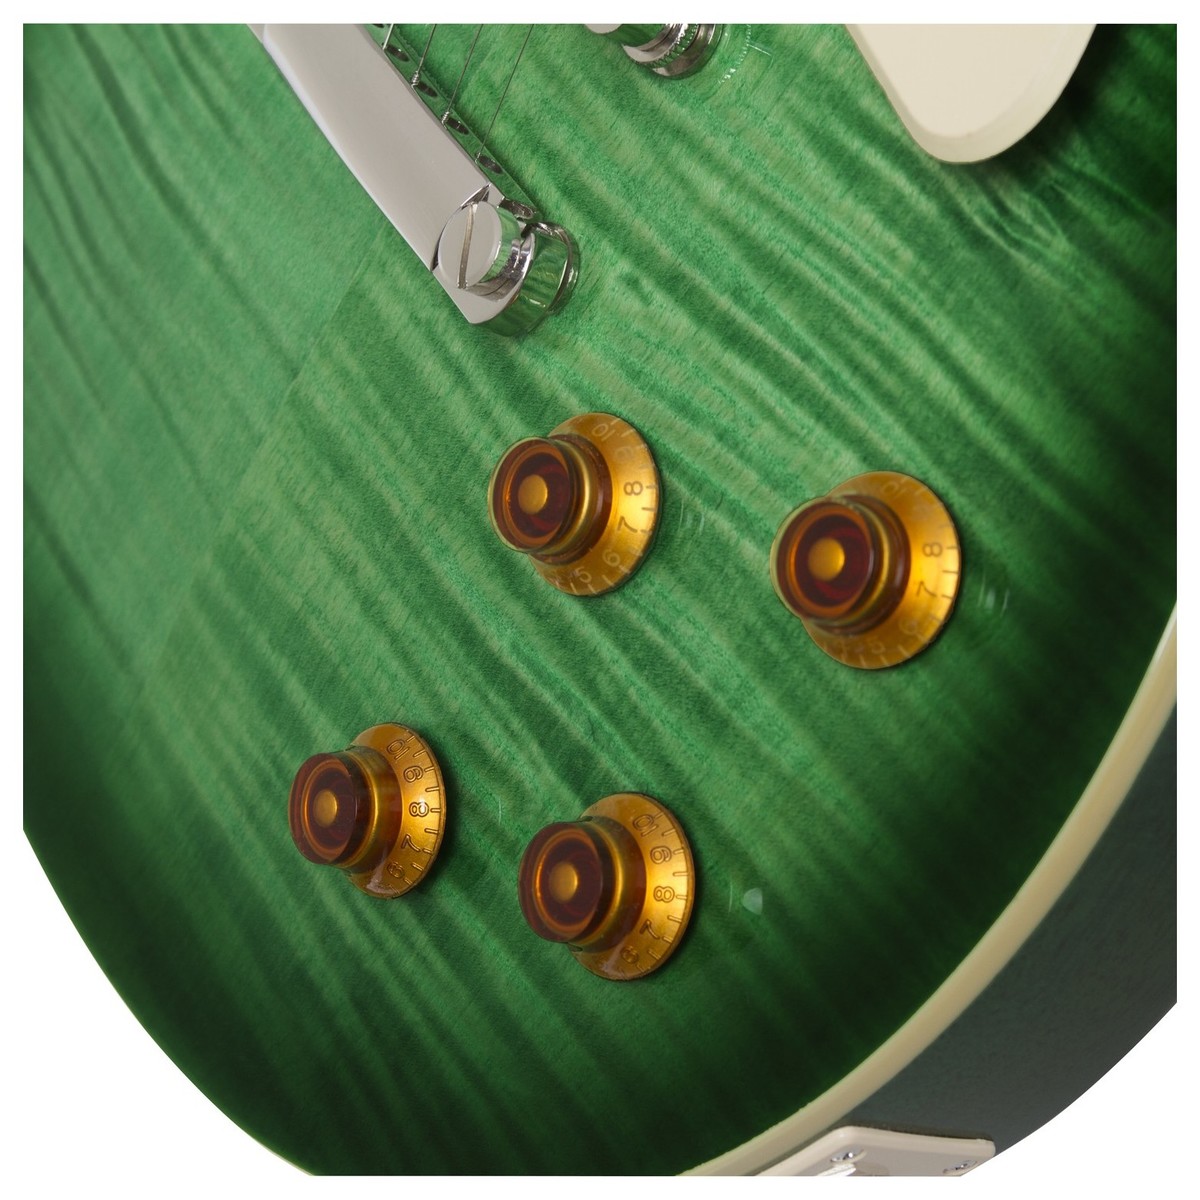 Epiphone Les Paul Standard Plus Top Pro 2018 Hh Ht Pf - Green Burst - Guitarra eléctrica de corte único. - Variation 4